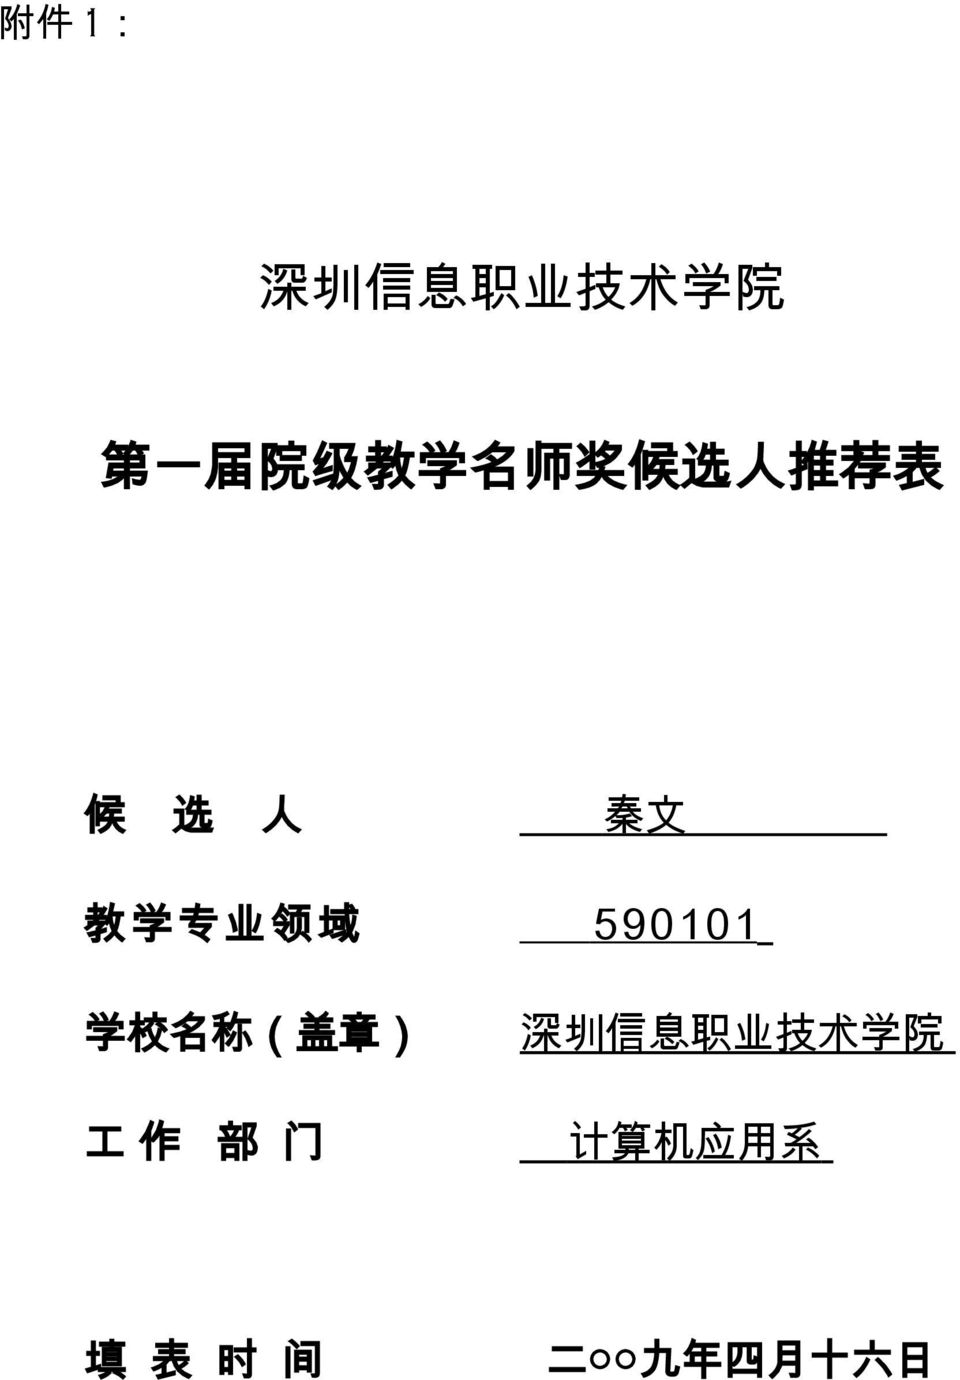 590101 学 校 名 称 ( 盖 章 ) 深 圳 信 息 职 业 技 术 学